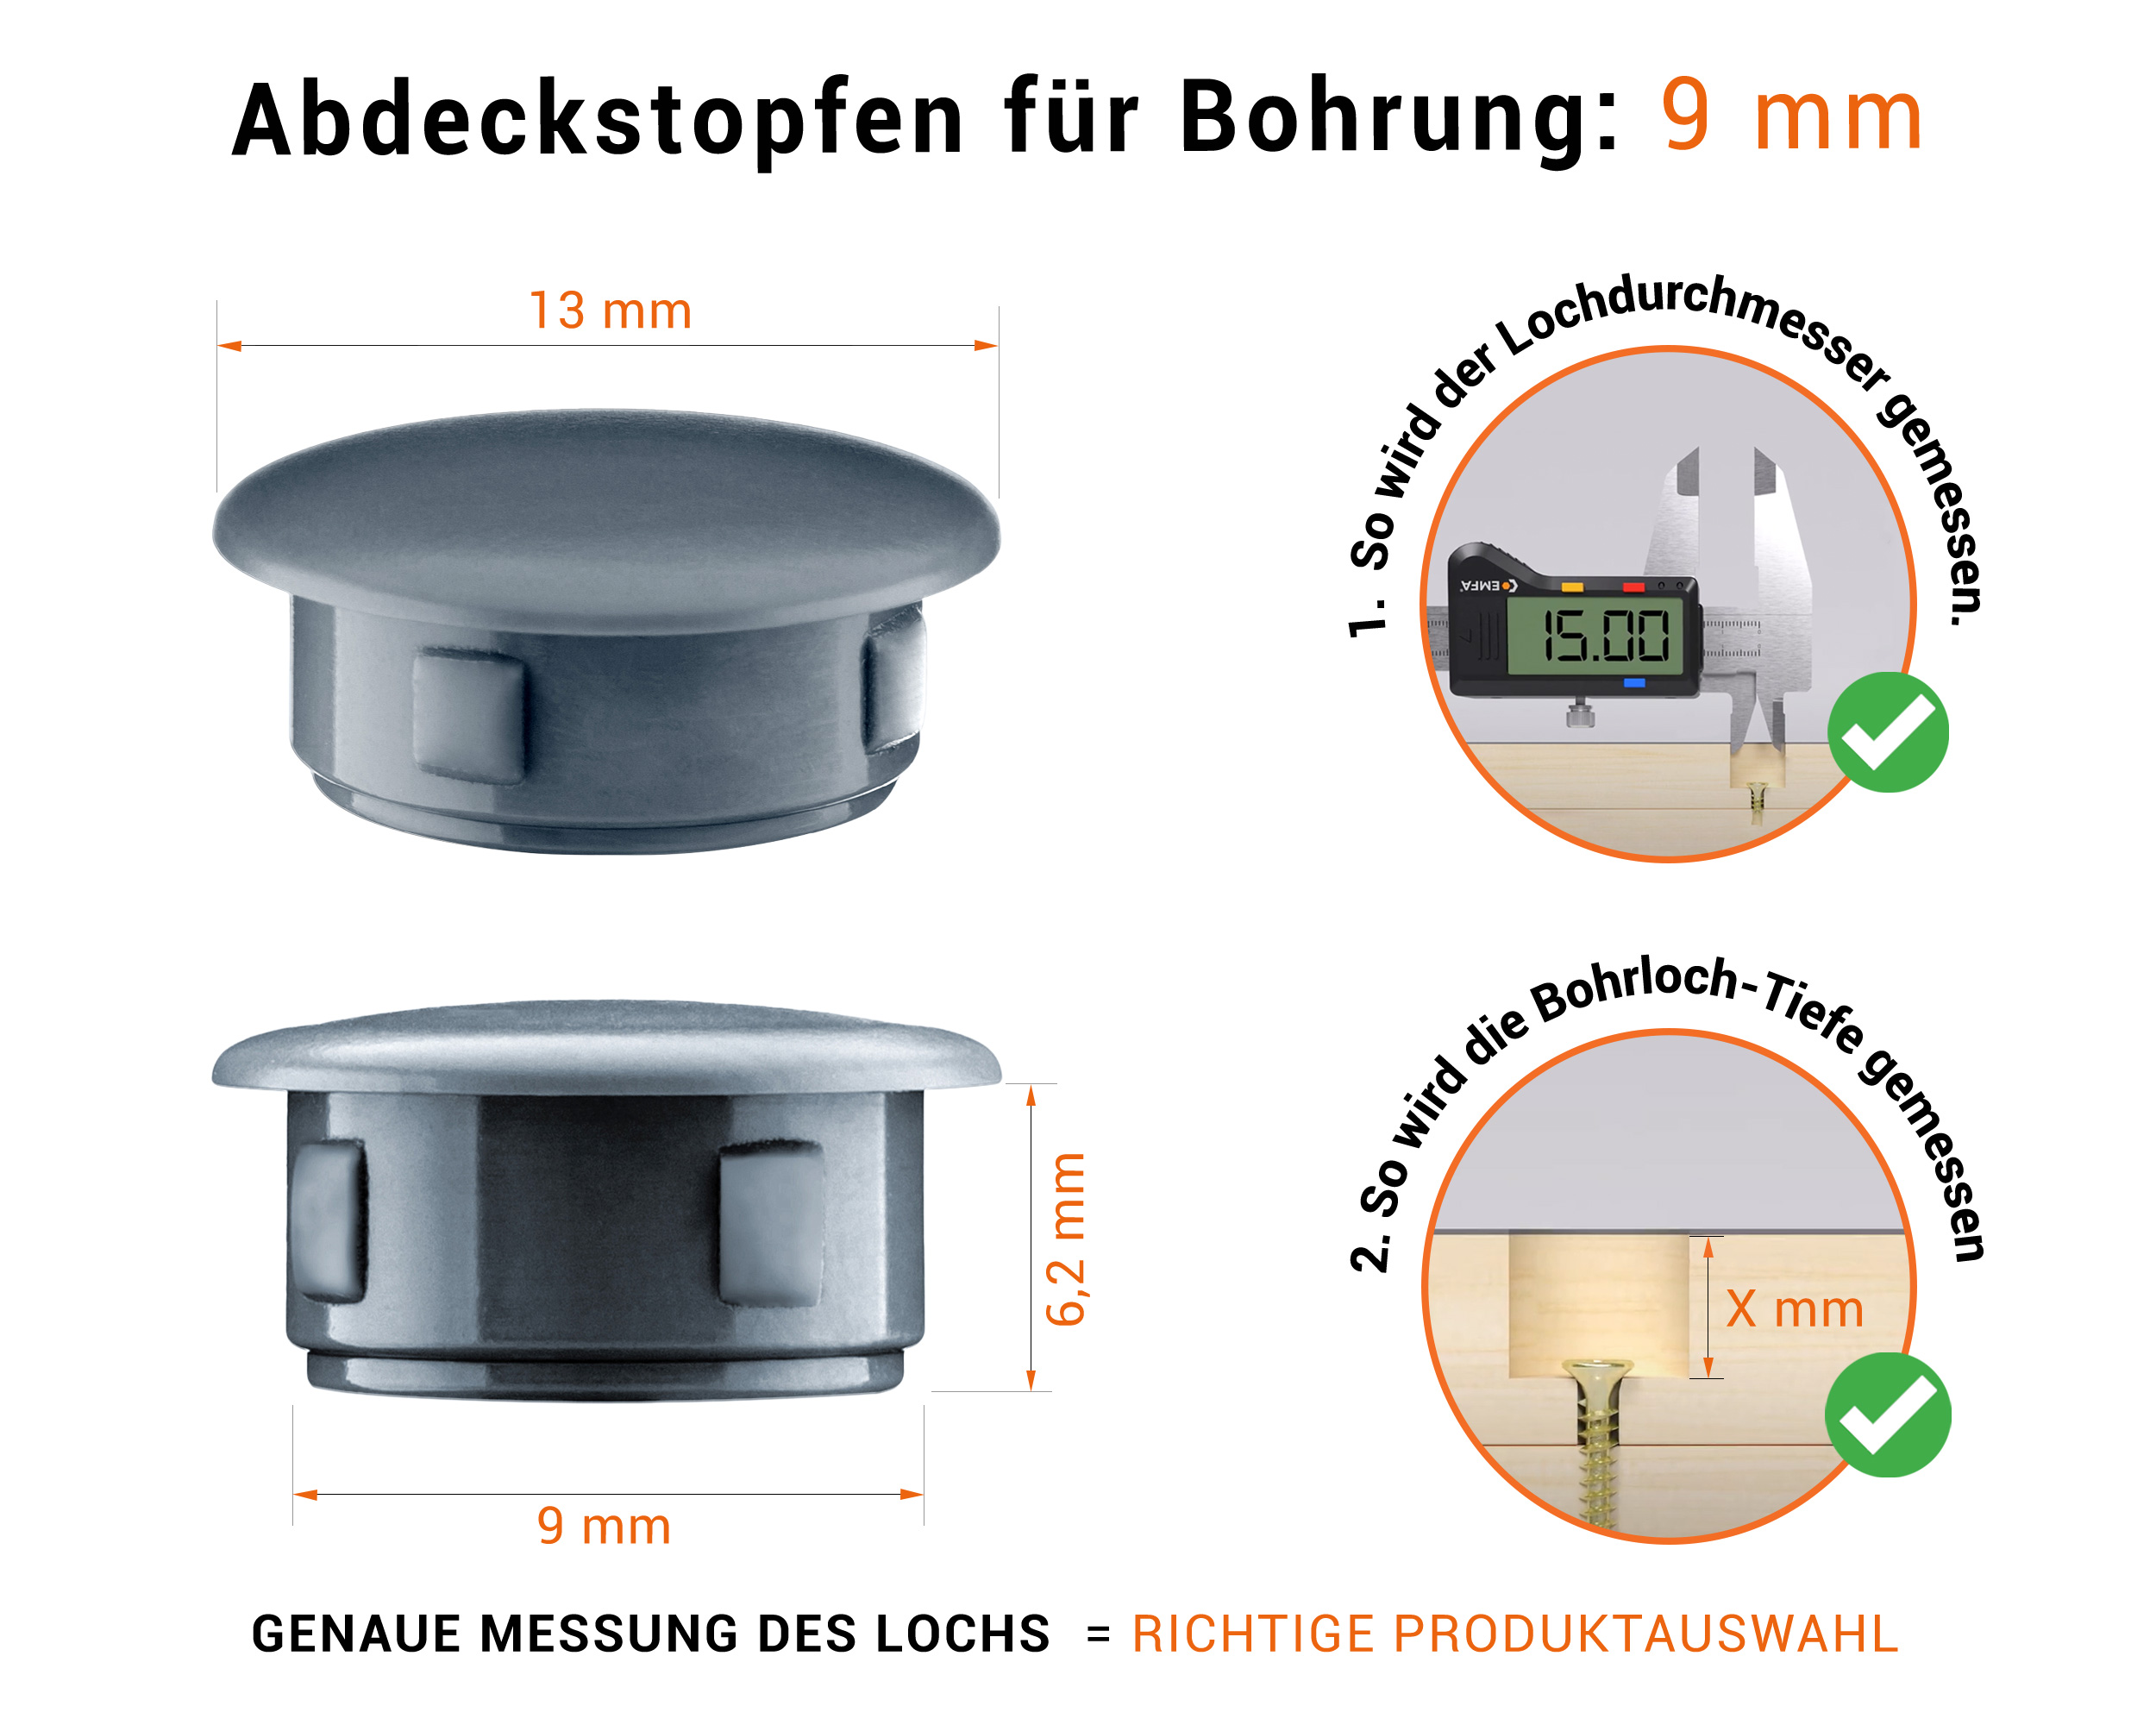 Anthrazite Blindstopfen aus Kunststoff für Bohrung 9 mm mm mit technischen Abmessungen und Anleitung für korrekte Messung